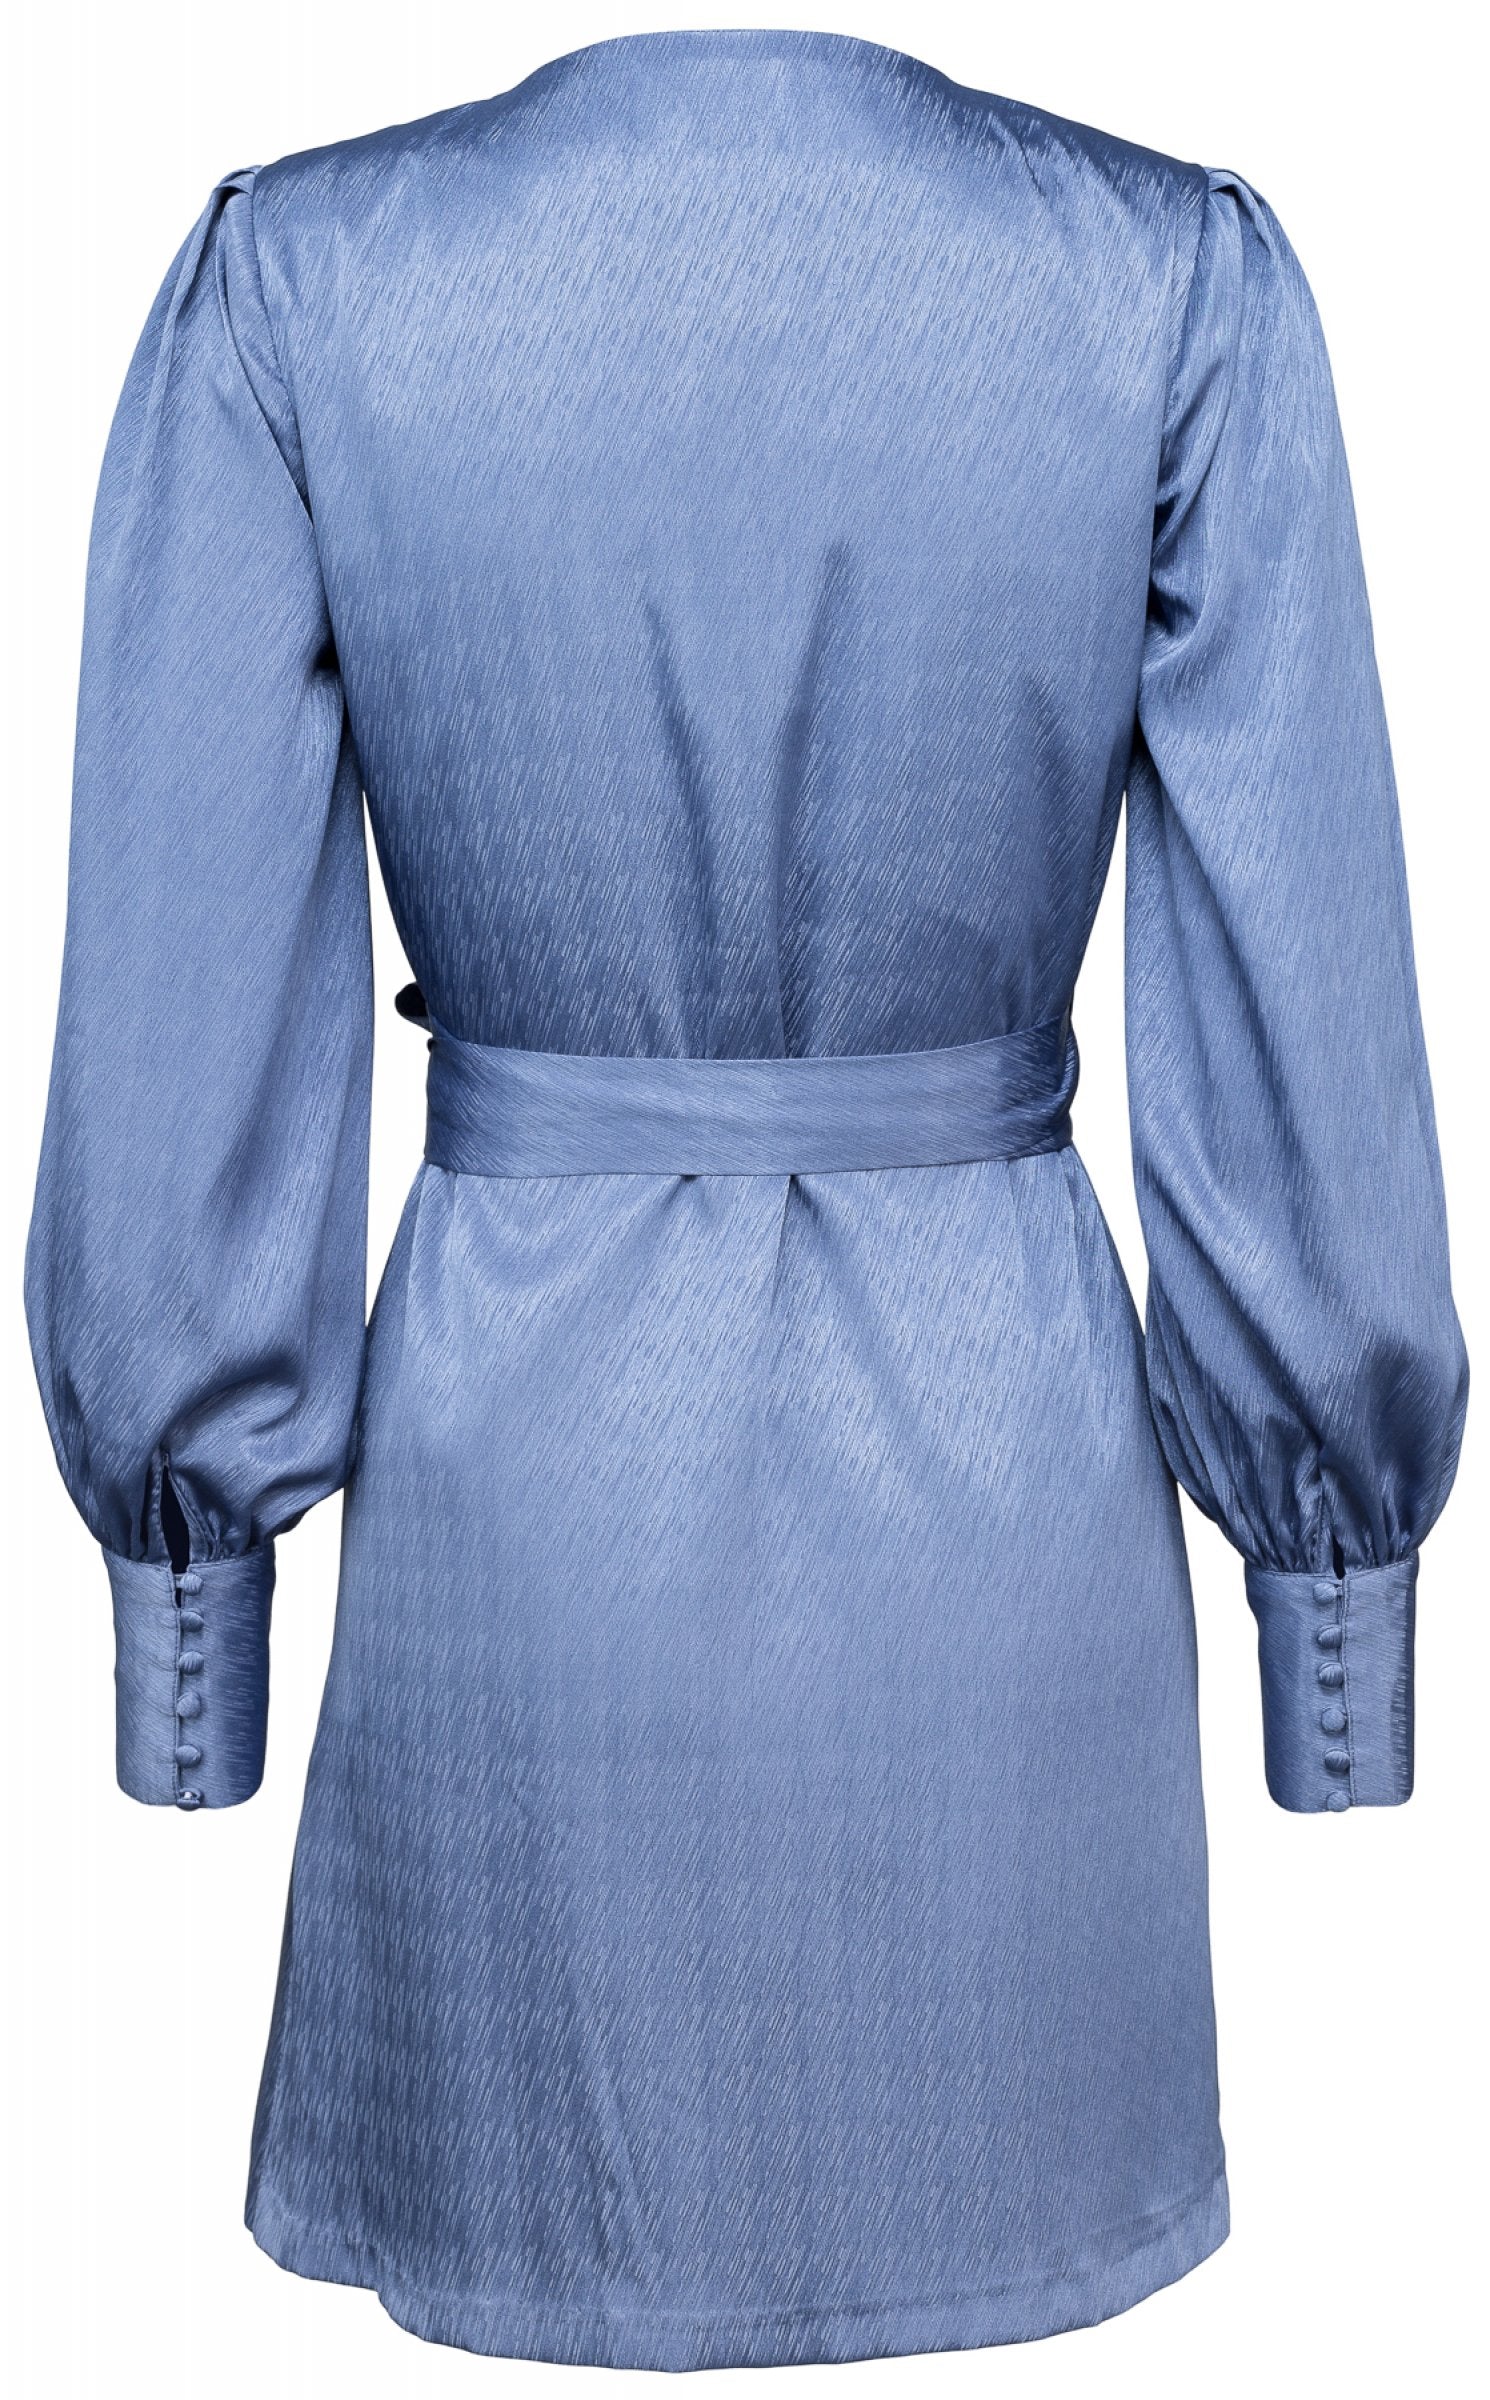 Rouleau Cuff Dress - Blue Horizon - MAUD - Kjoler - VILLOID.no